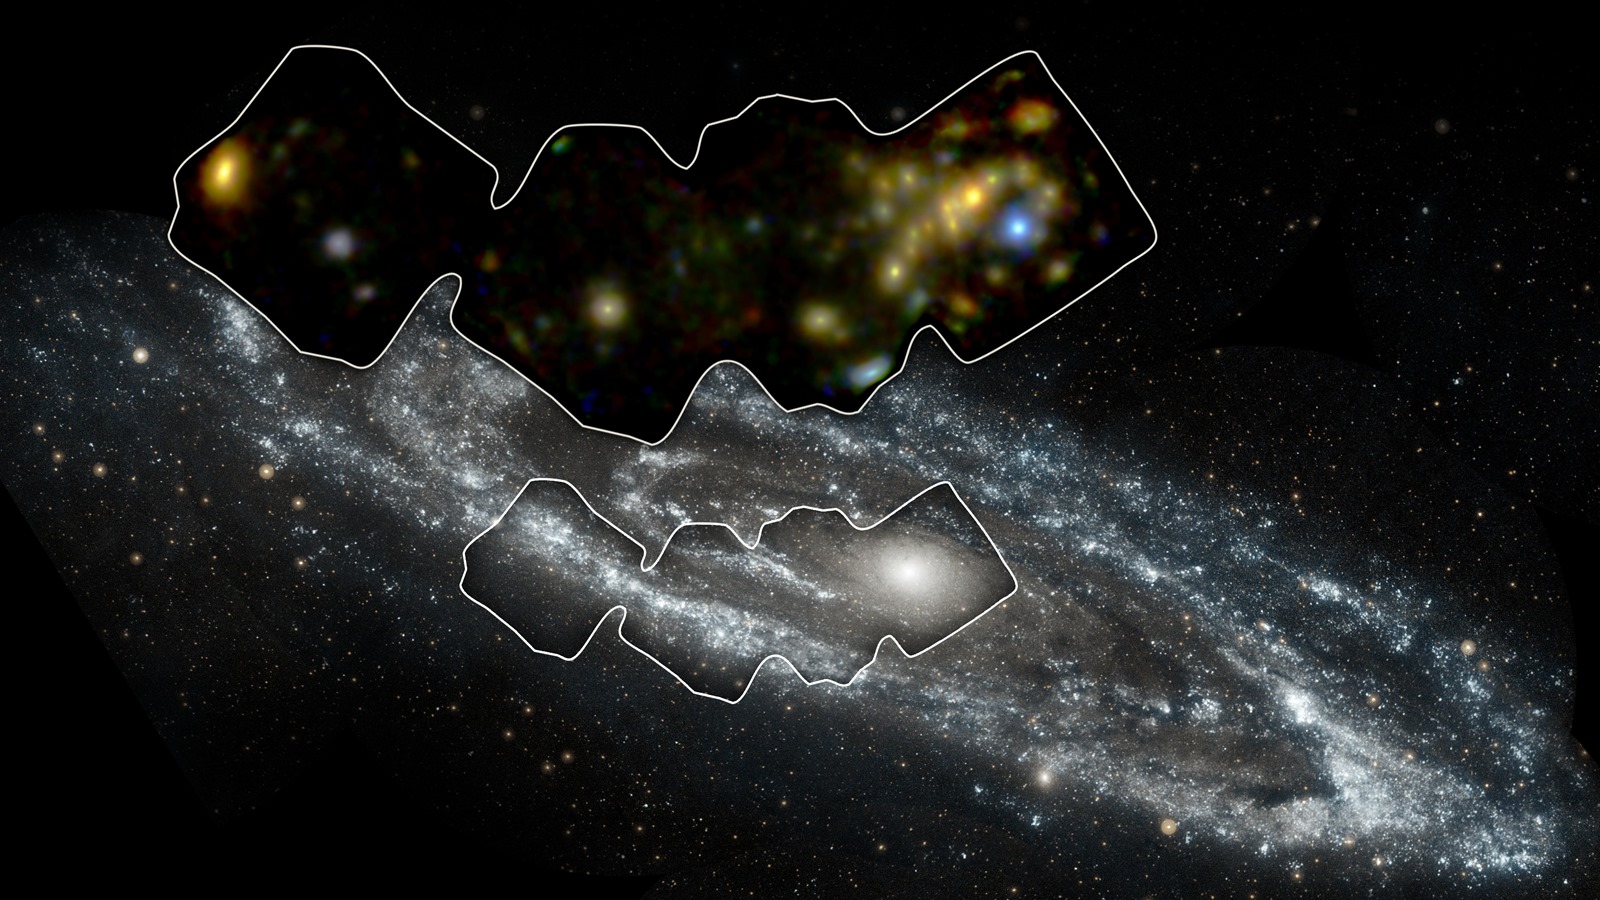 Un concentré de “binaires X” révélé au sein de la grande soeur de notre galaxie, Andromède